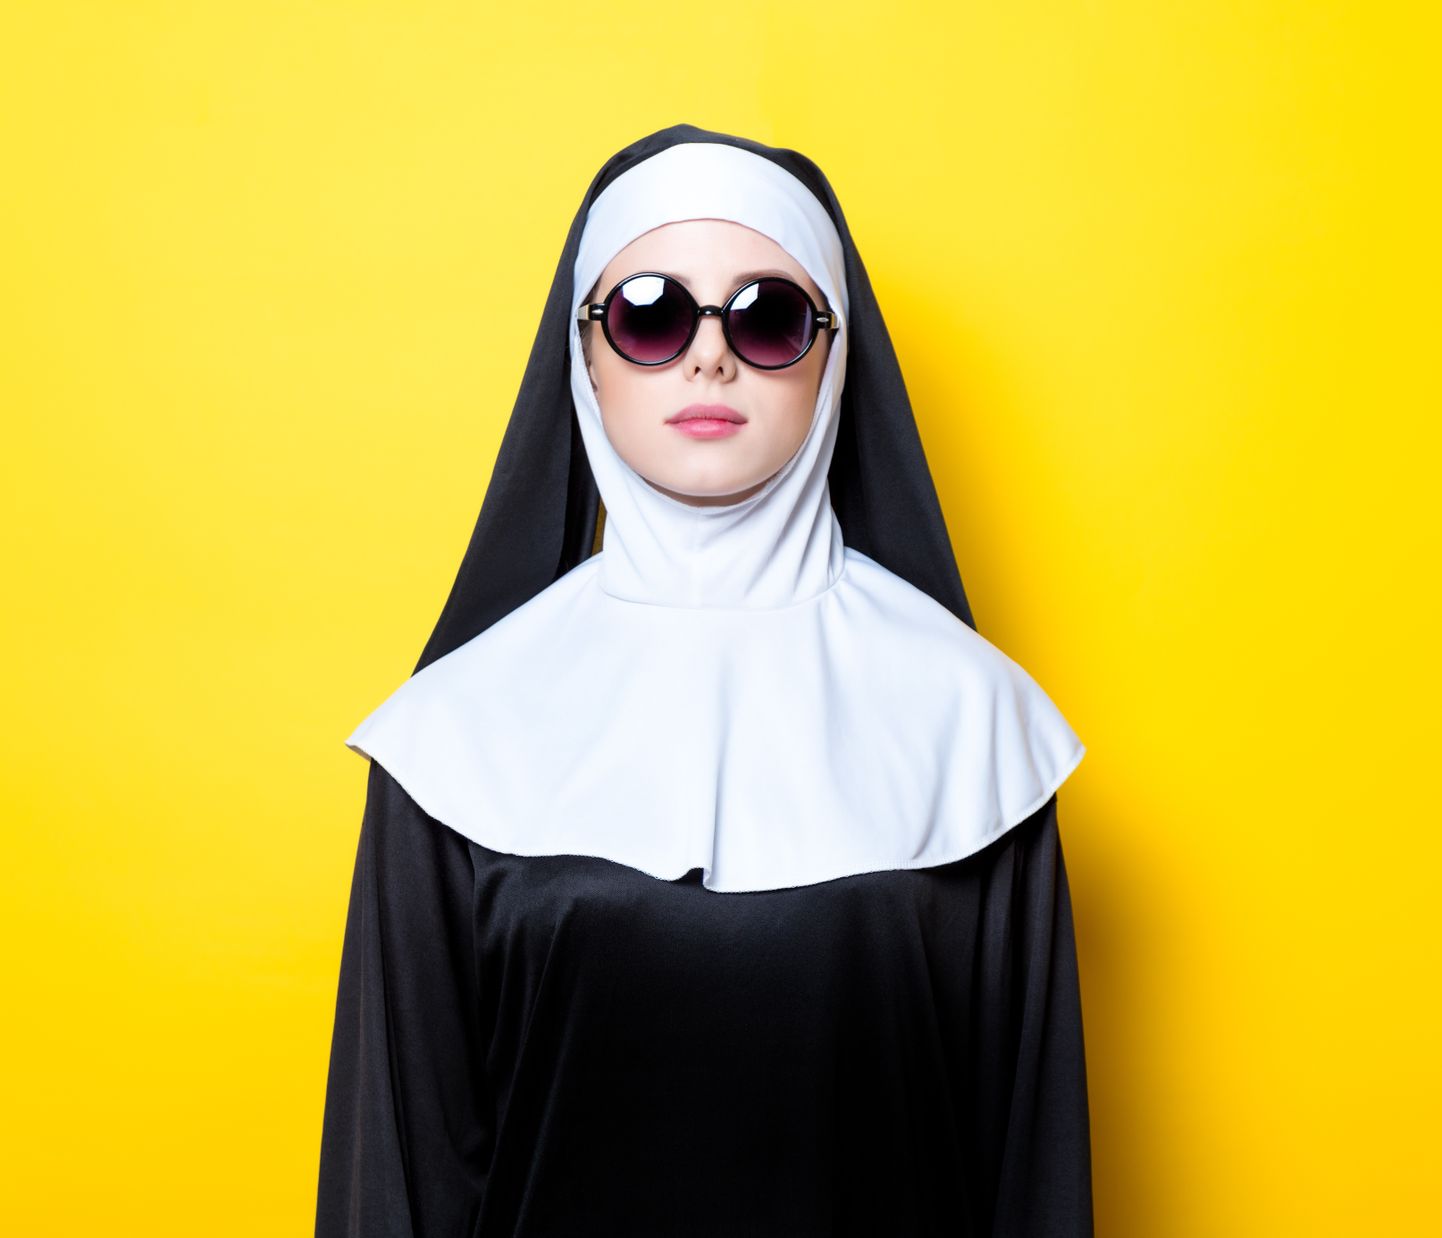 Katoliku nunn päikeseprillidega. Pilt on illustreeriv